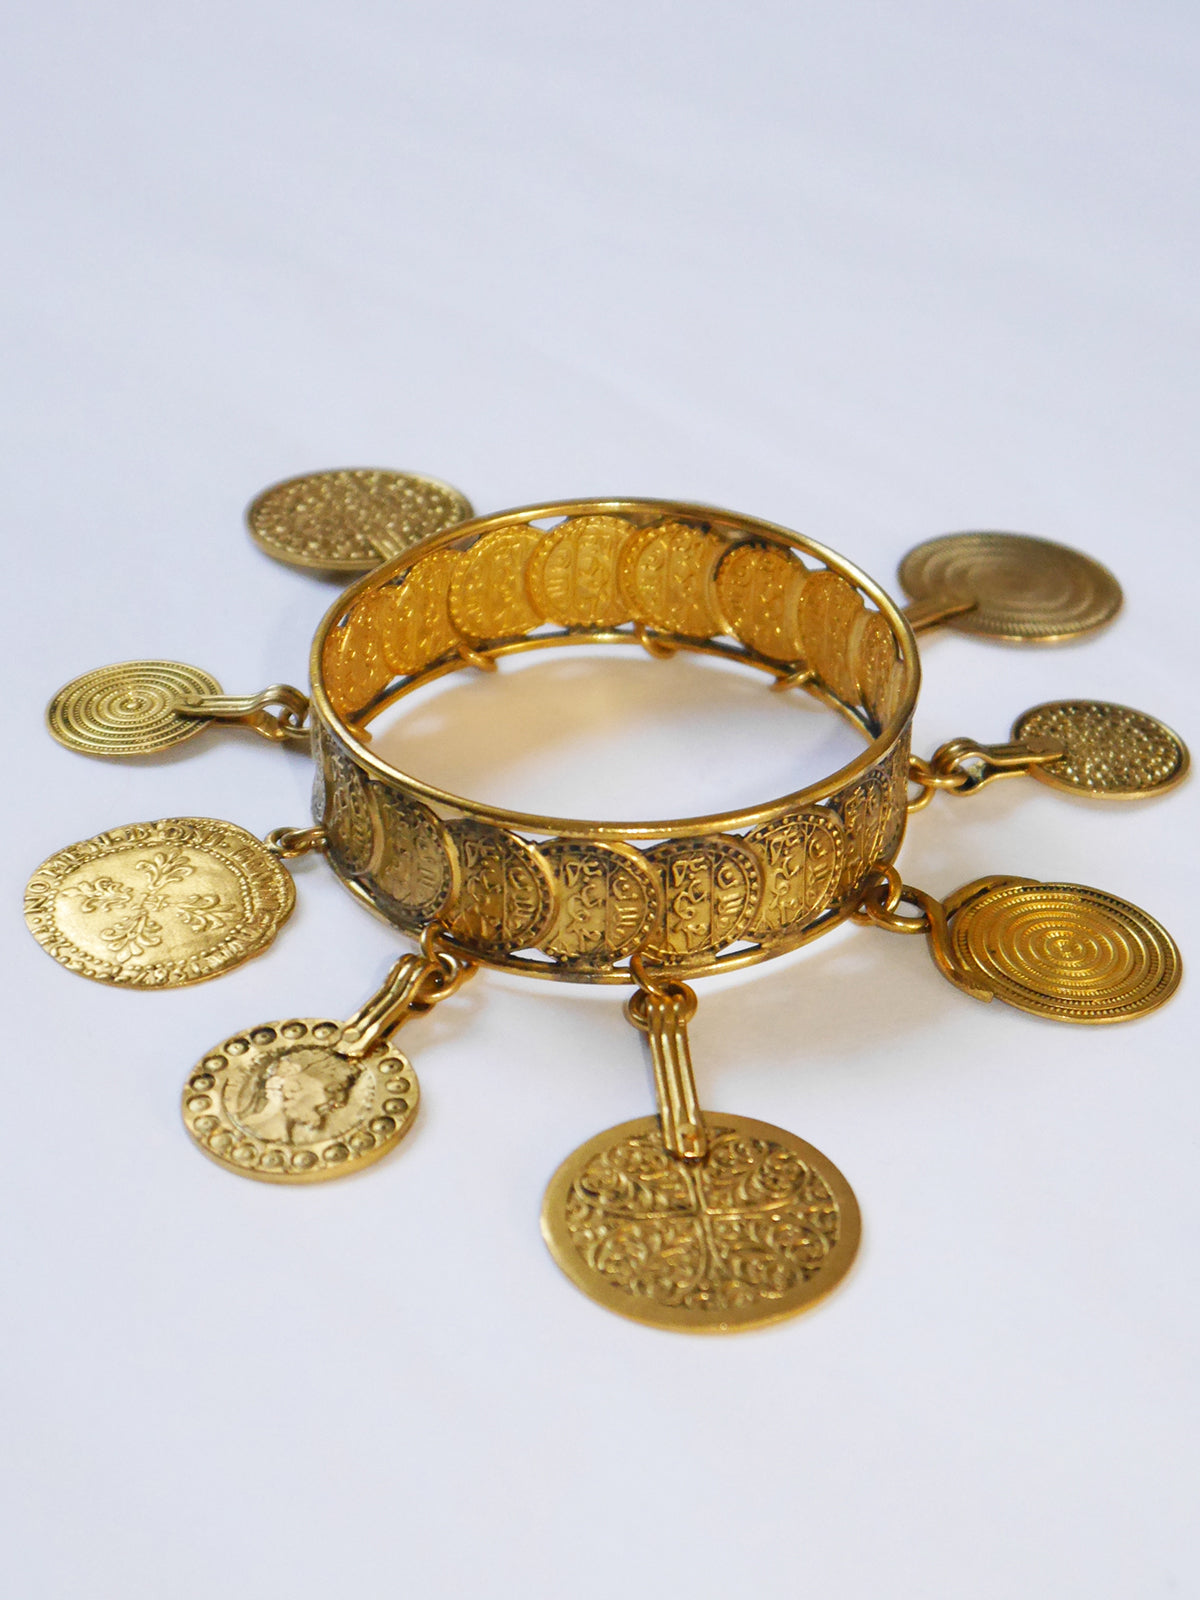 YVES SAINT LAURENT c. 1977 Vintage Coin Charm Pendant Bangle Bracelet